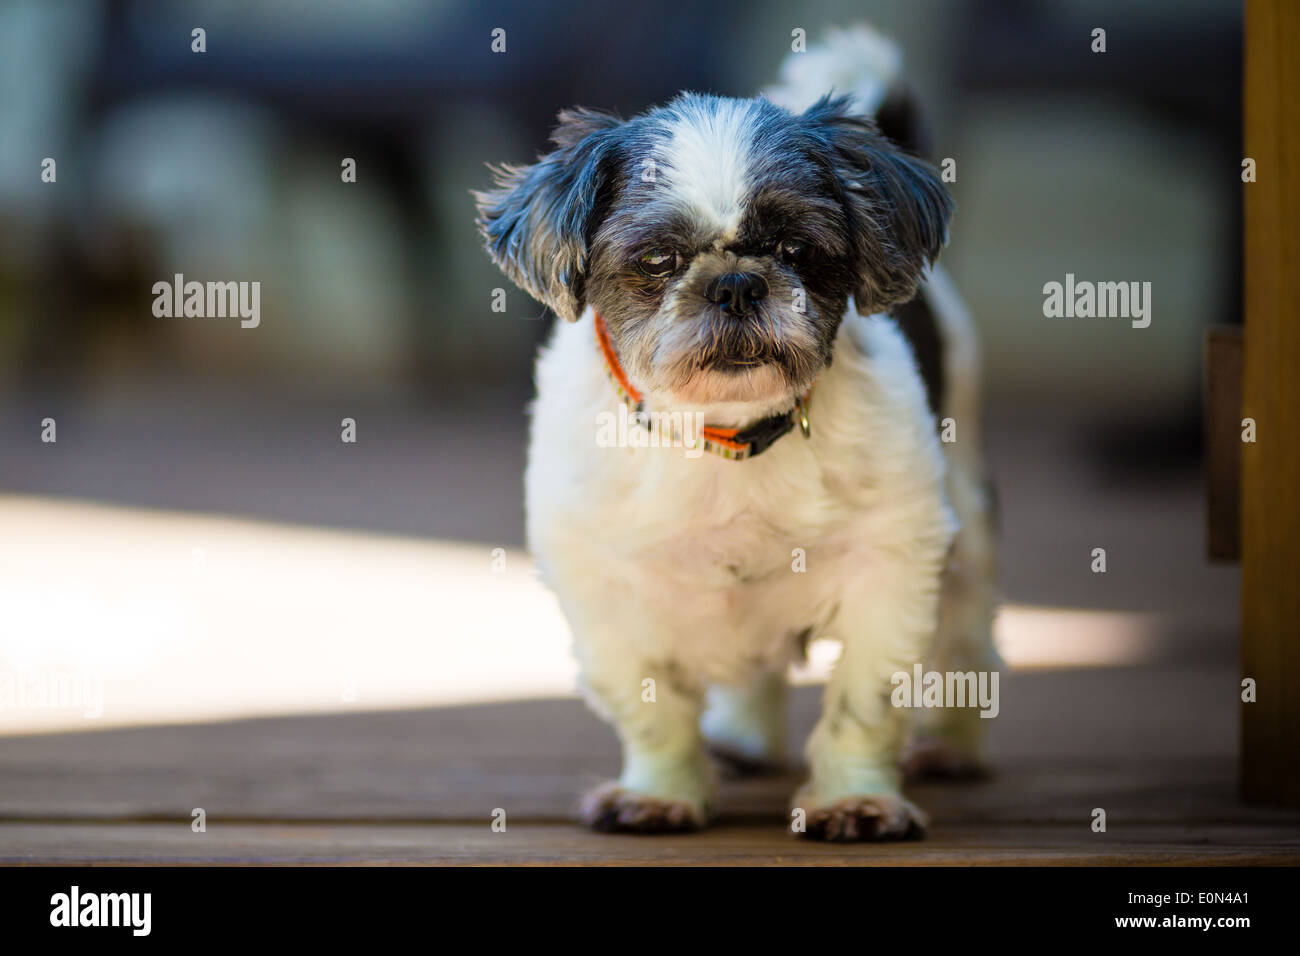 Blanco y negro pequeño perrito shih tzu busca en el cabezal de la cámara vertical Foto de stock